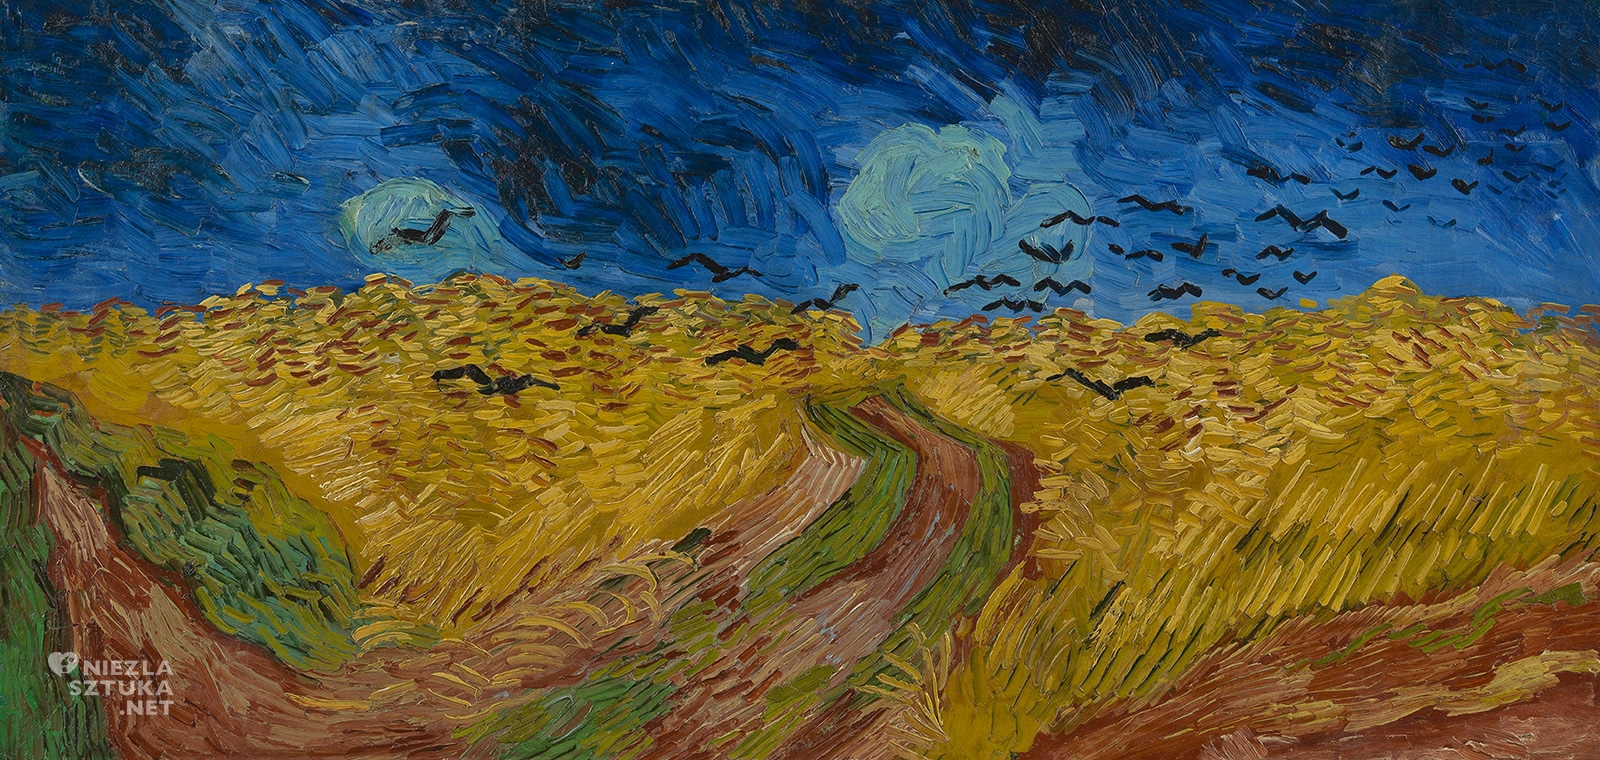 Vincent van Gogh, Pole pszenicy z krukami, Kruki nad polem pszenicy, van Gogh Museum, niezła sztuka